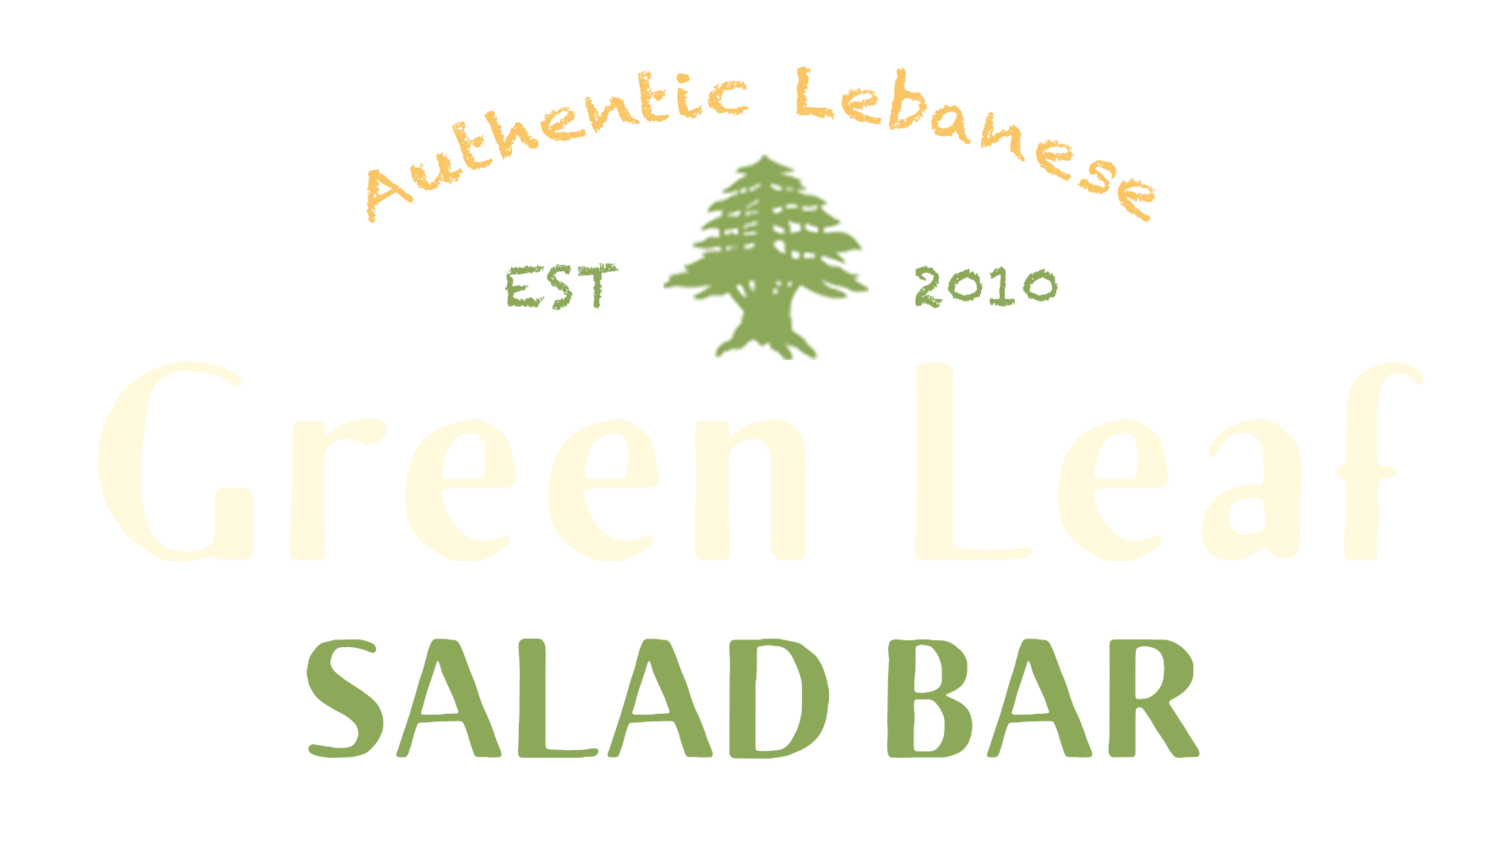 Green Leaf salad bar